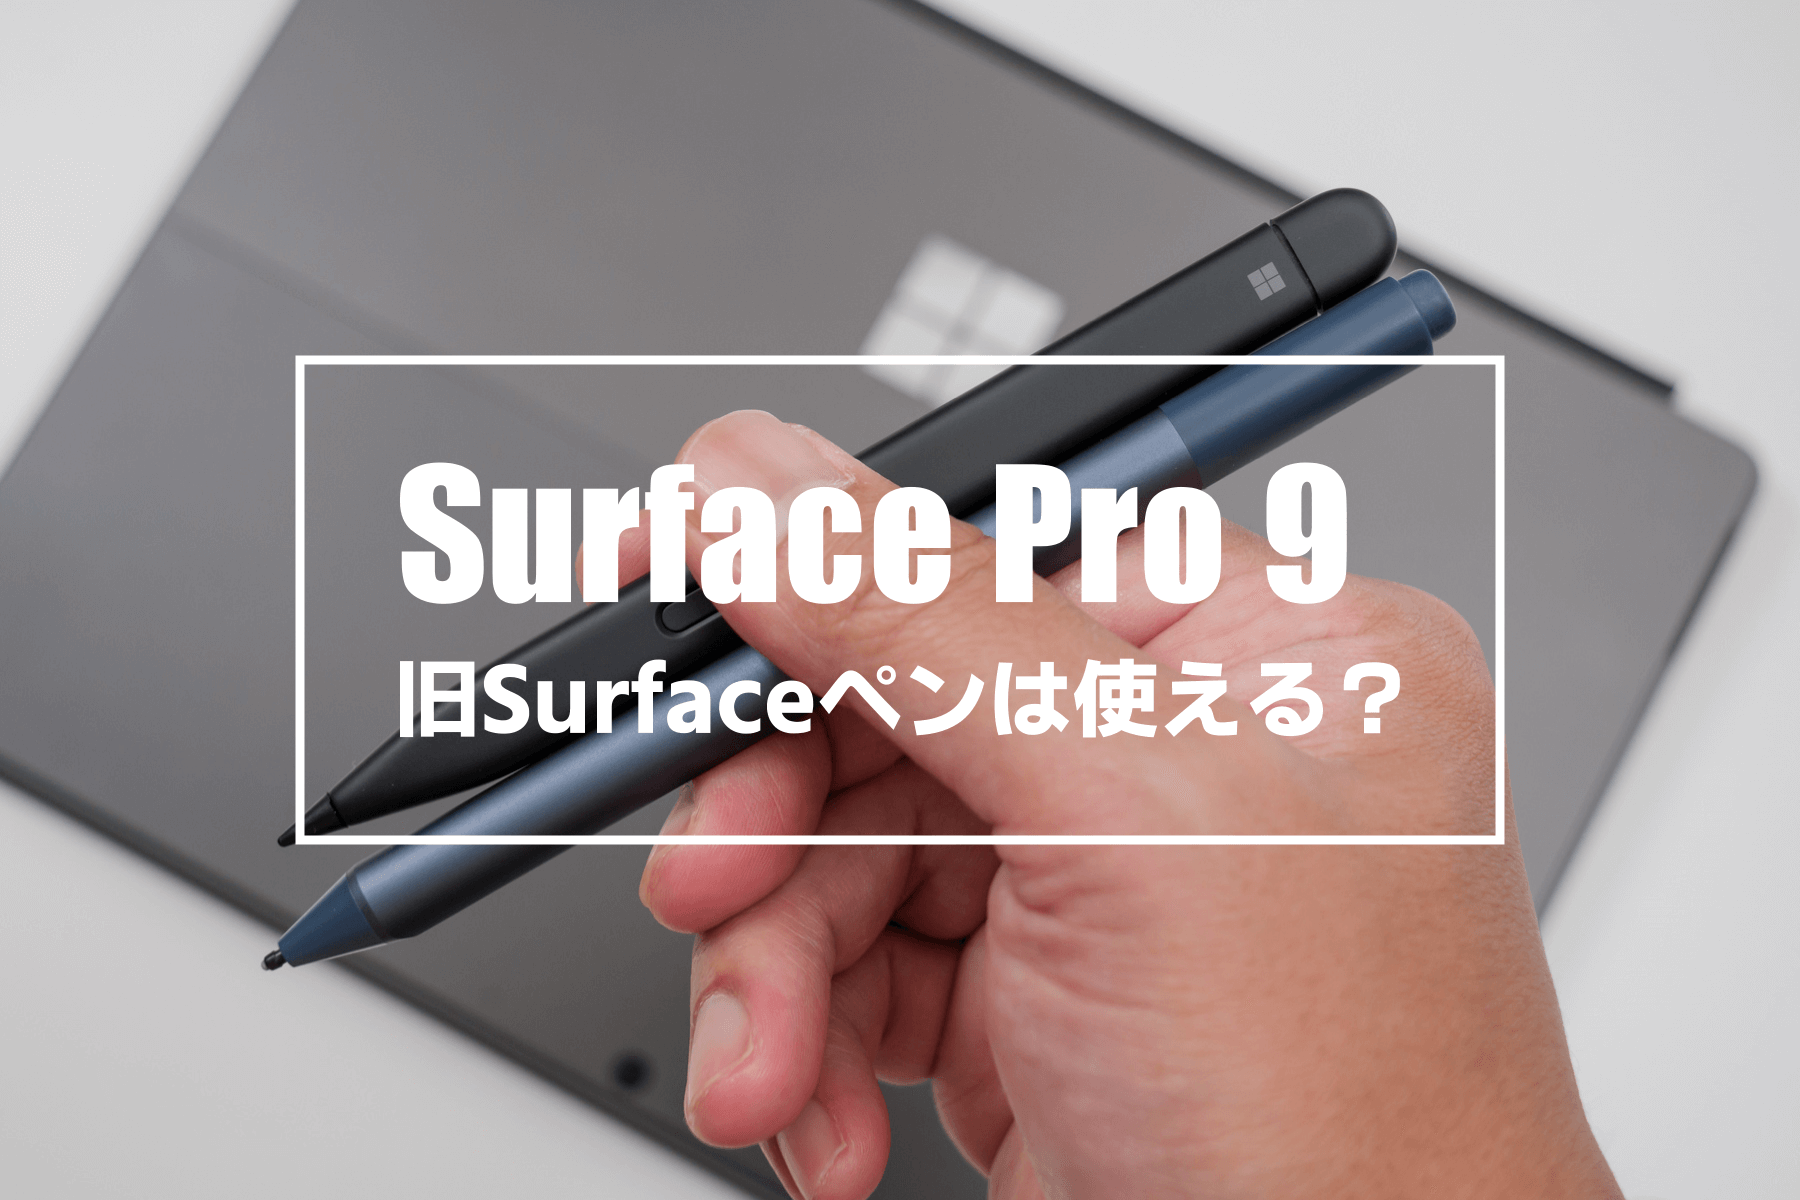 Surface Pro 9 / 8 で旧型の Surface ペンは使えるのか？